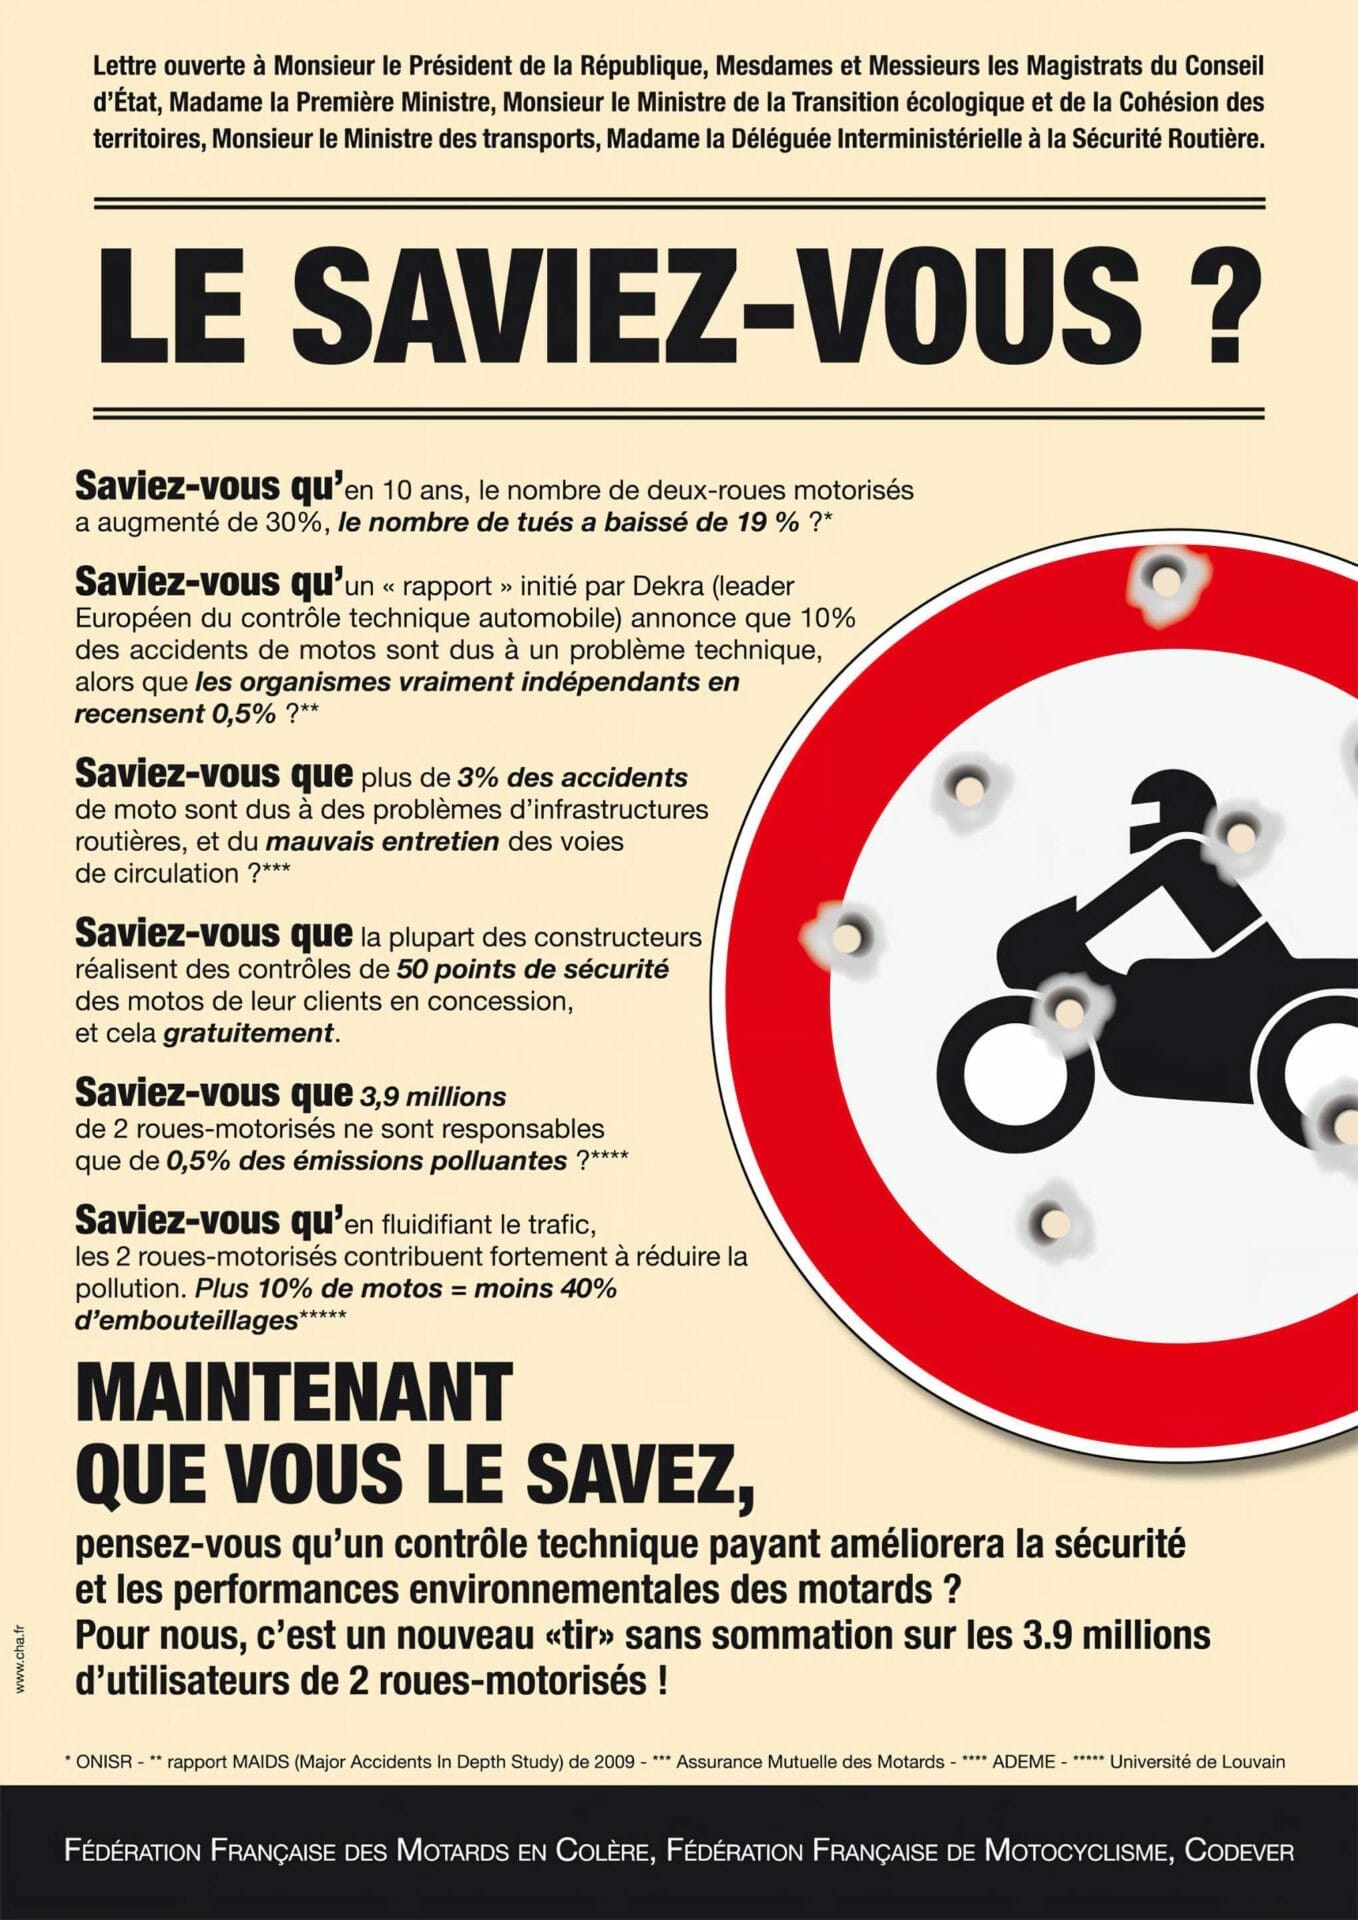 Frankreichs Biker gehen auf die Straße - MOTORCYCLES.NEWS